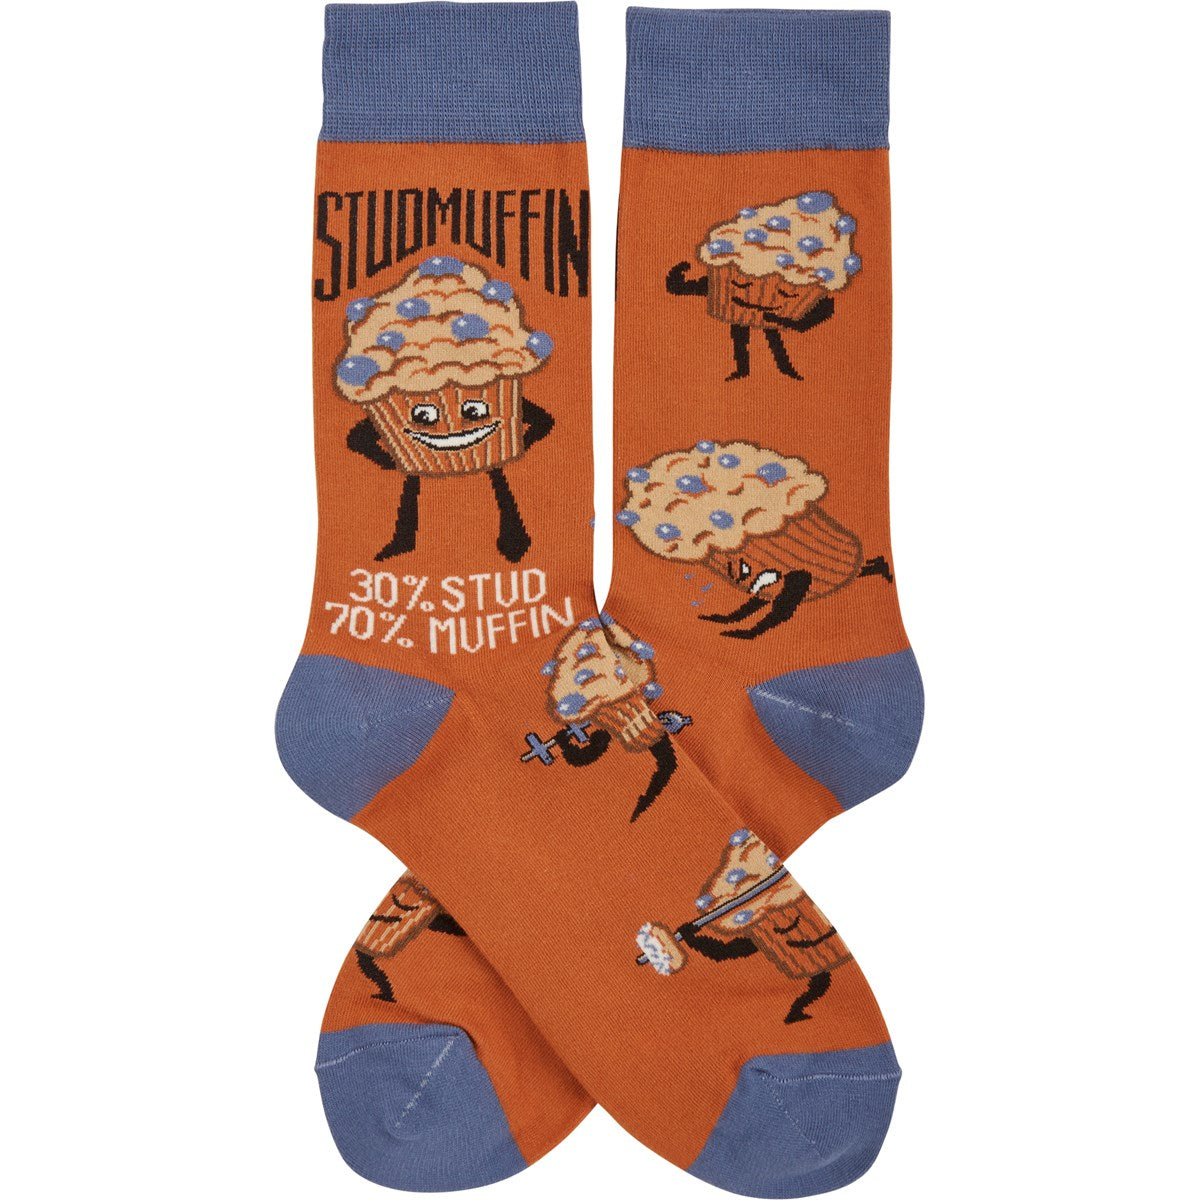 Socks: Stud Muffin Socks